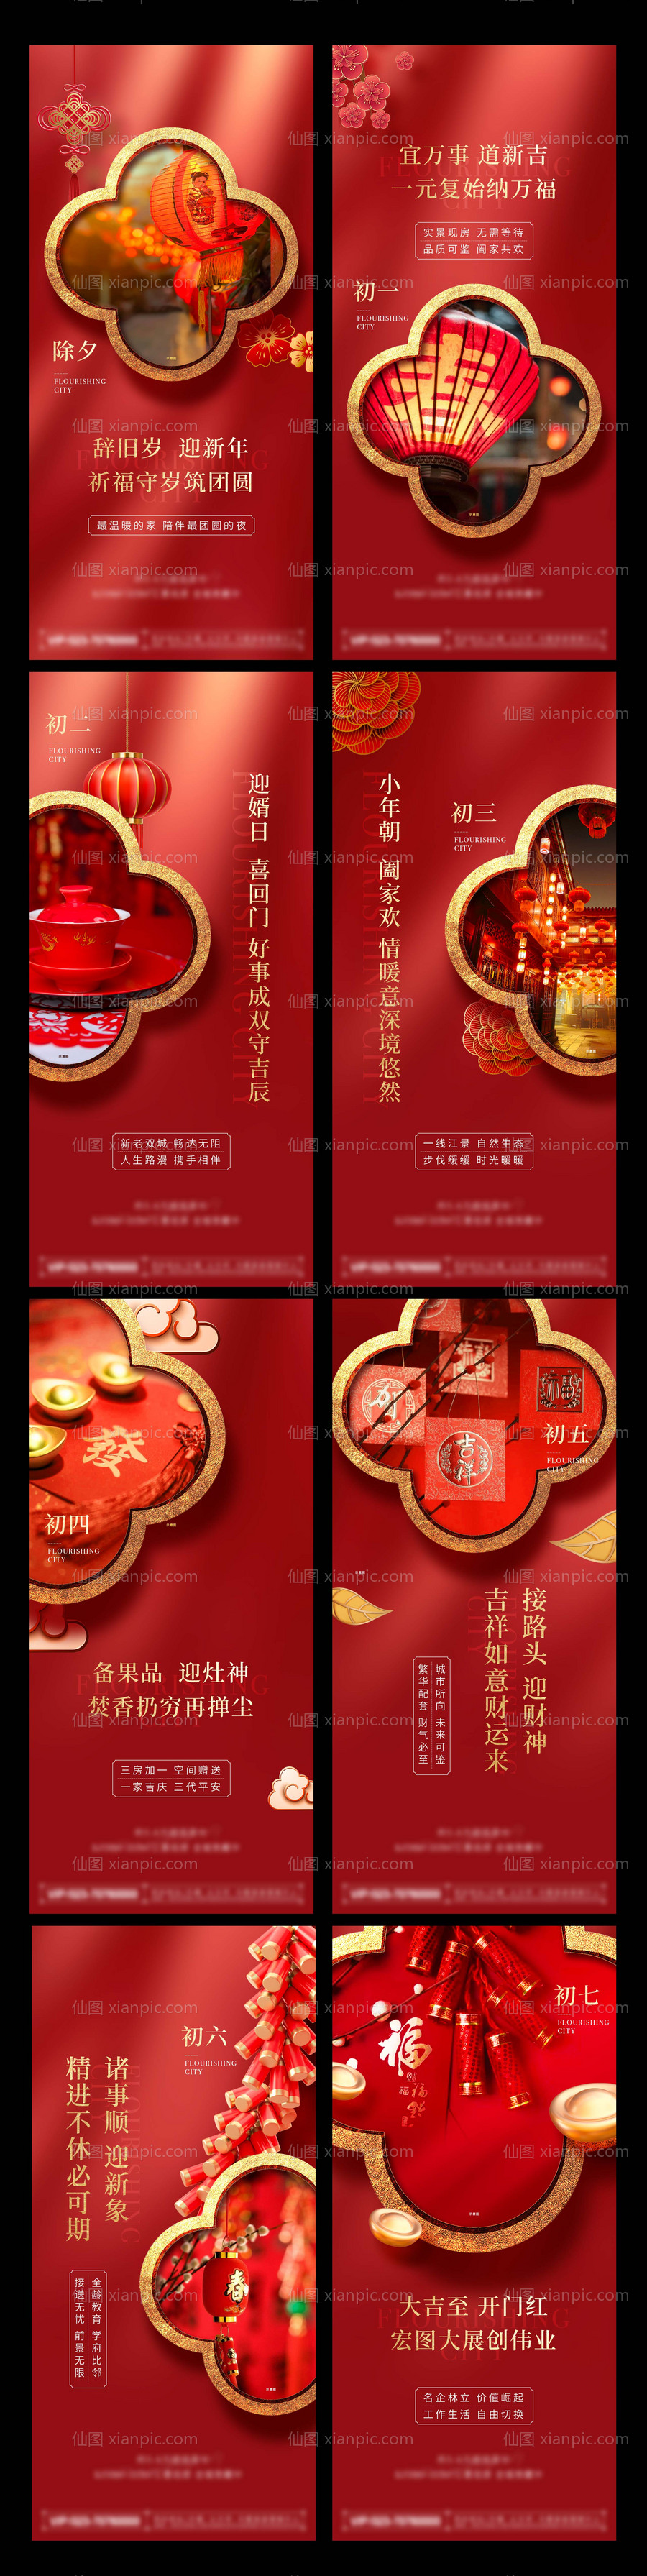 素材乐-地产春节新春系列刷屏海报